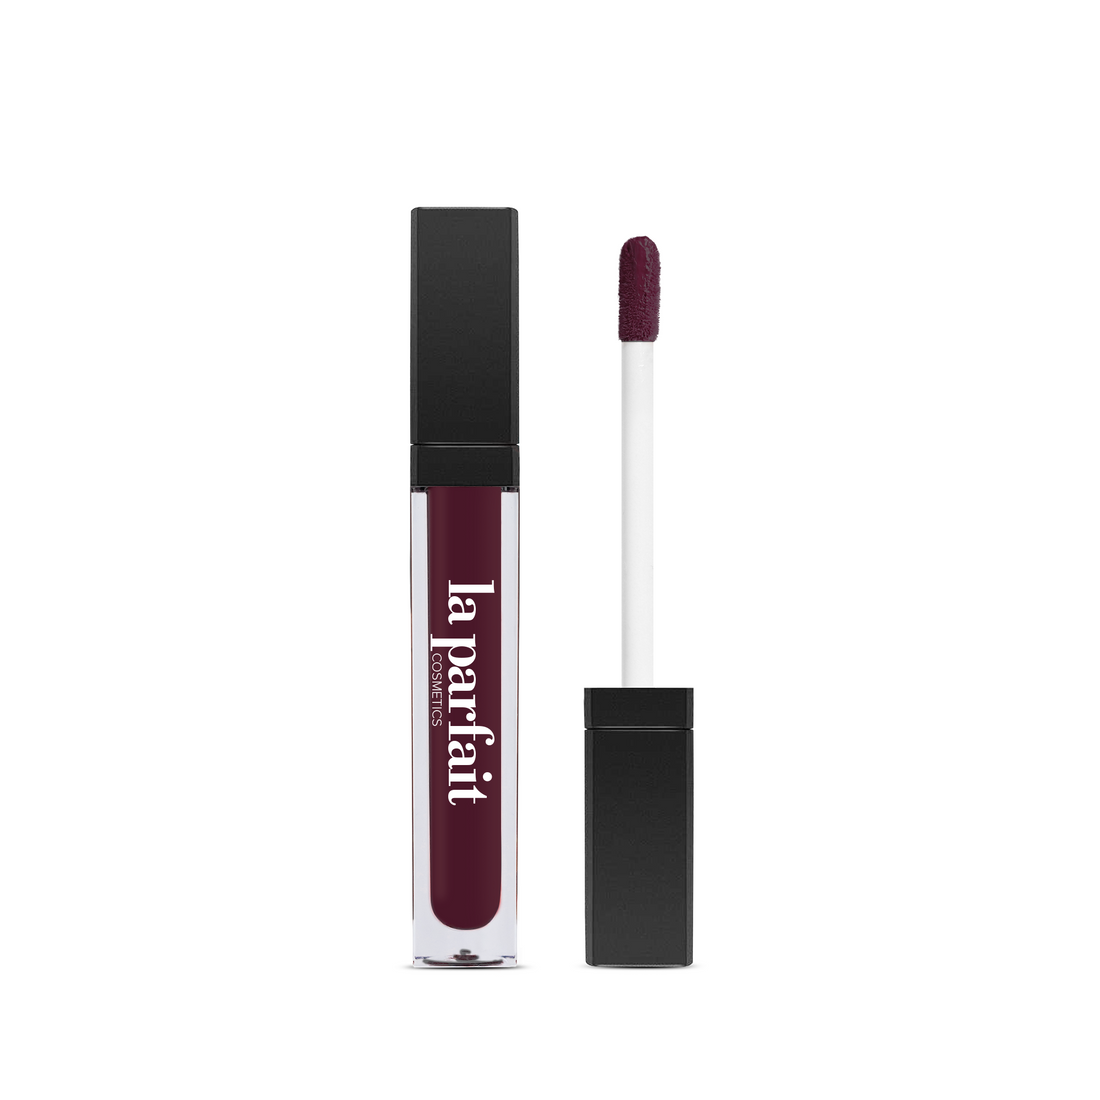 Tweet Bengelen Haringen Matte Liquid Lipstick – La Parfait Cosmetics